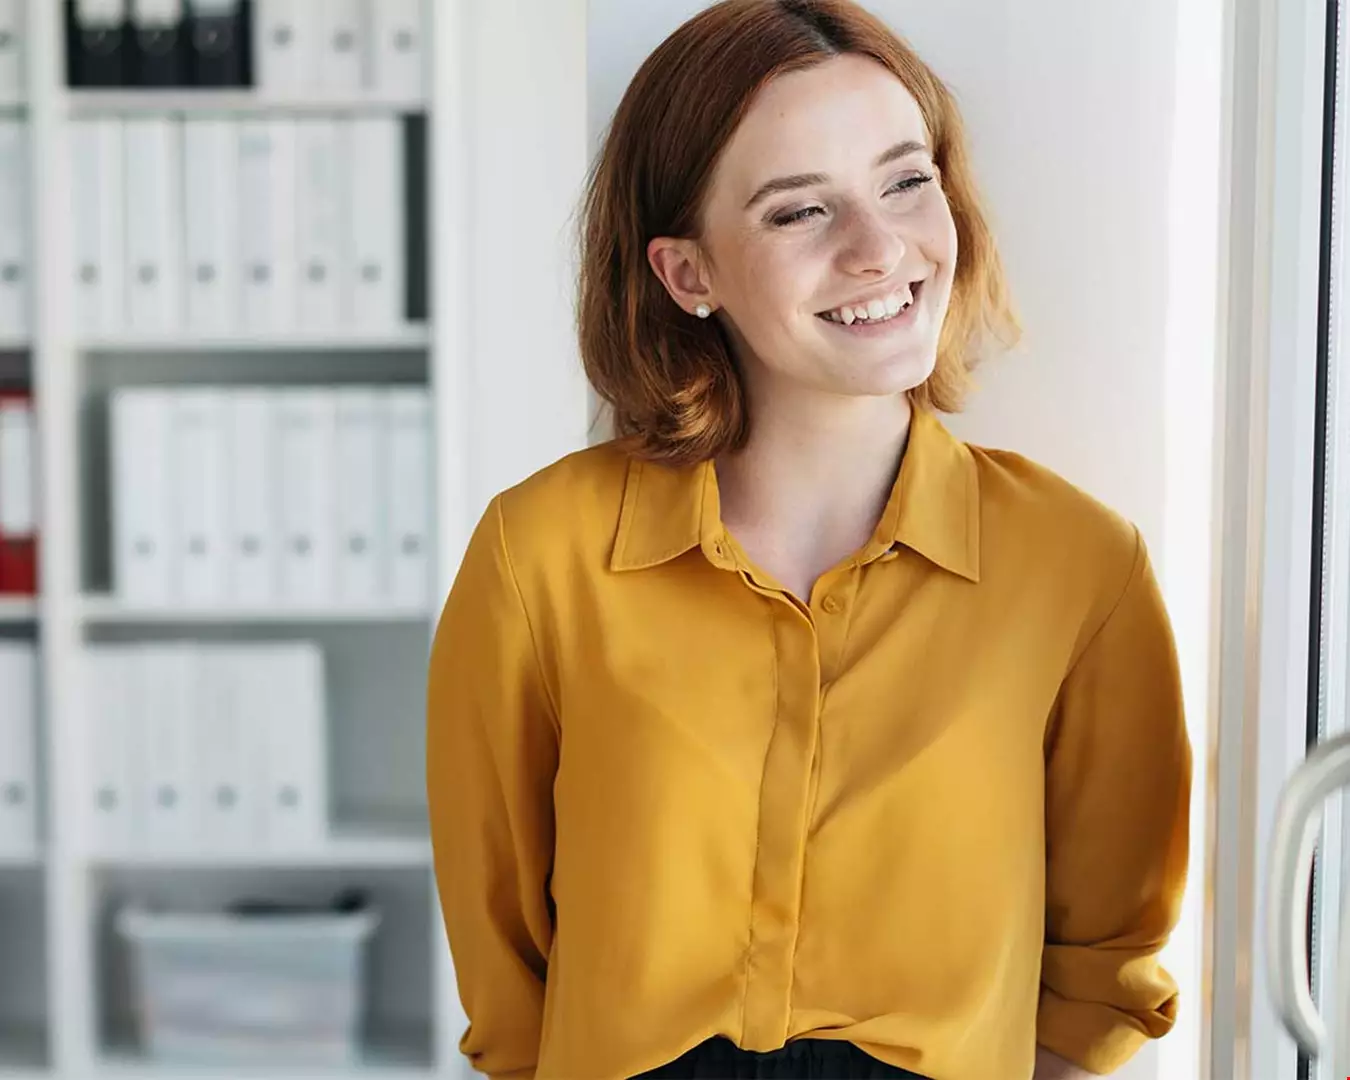 En ung kvinna i kontorsmiljö, hon har gul blir och rött hår Akavia Aspekt